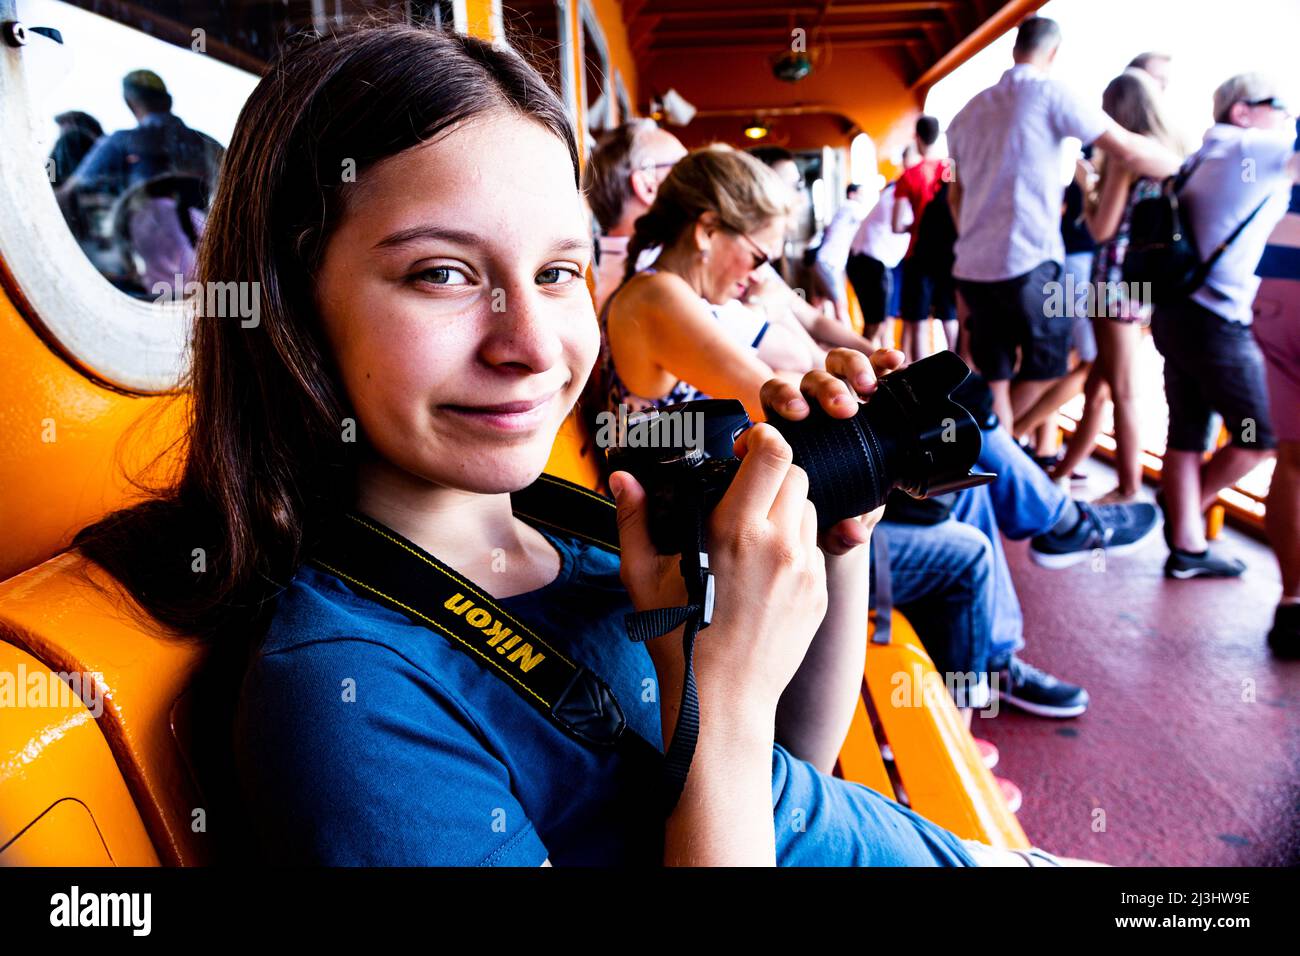 New York City, NY, EE.UU., 14 años, adolescente caucásica con pelo marrón en el ferry de staten Island Foto de stock